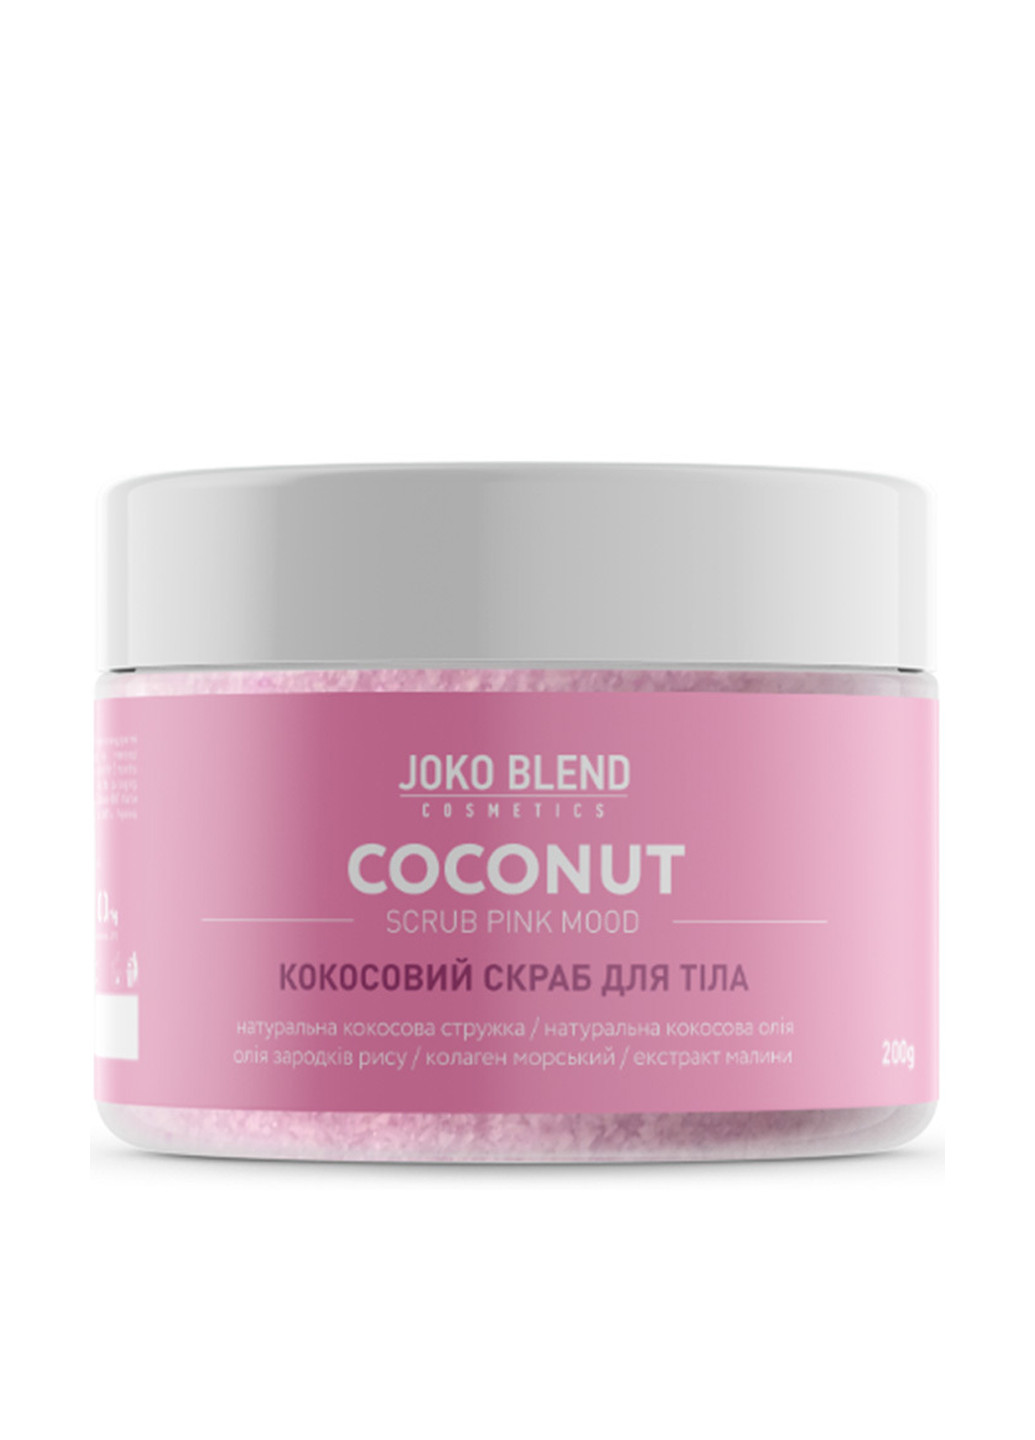 Кокосовый скраб для тела Coconut Scrub Pink Mood 200 г Joko Blend (88095955)